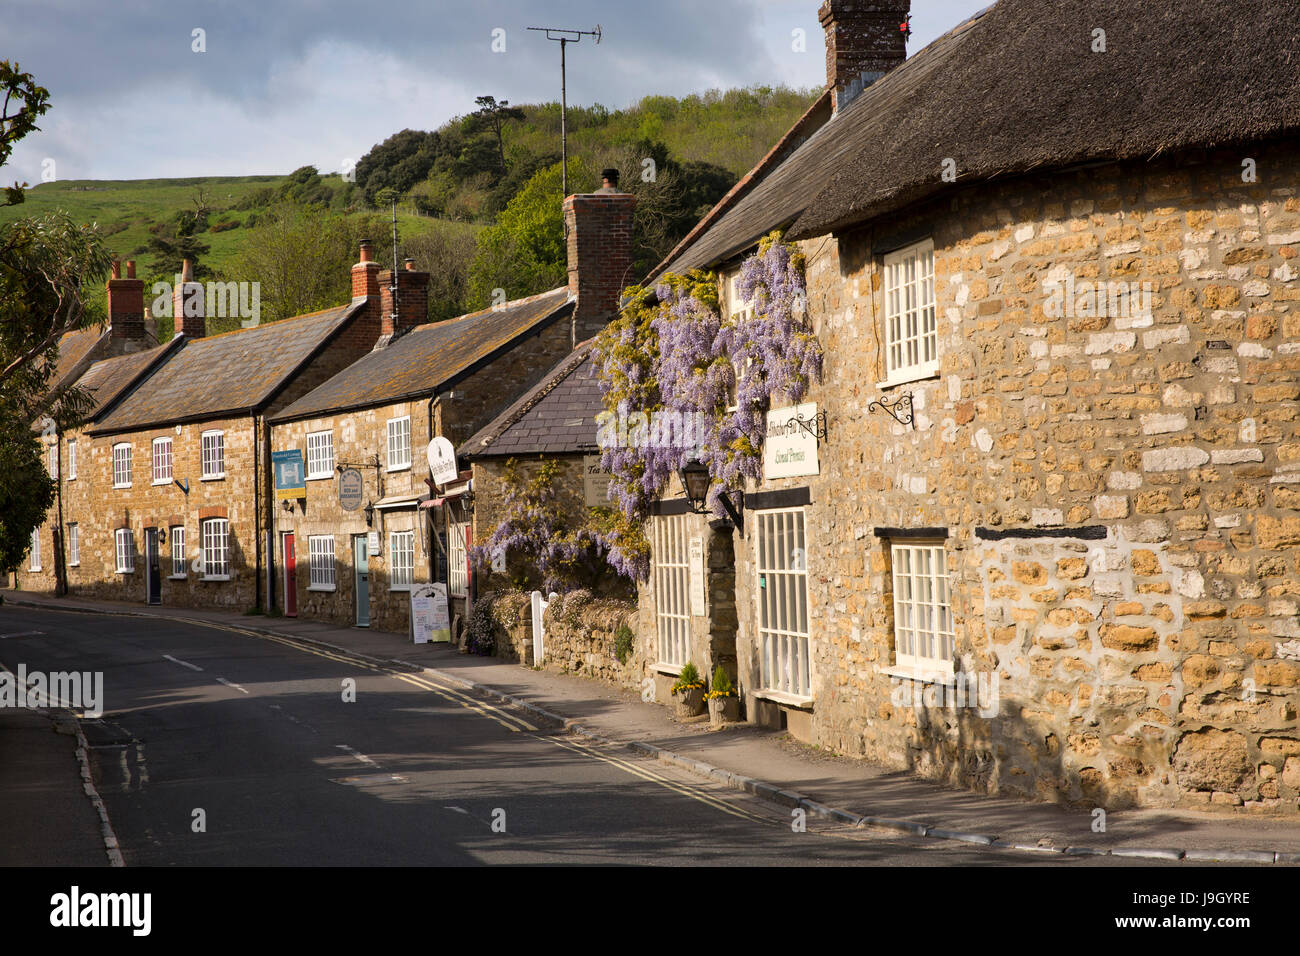 Royaume-uni l'Angleterre, dans le Dorset, Abbotsbury, Market Street, wisteria clad salon de thé et magasin du village Banque D'Images